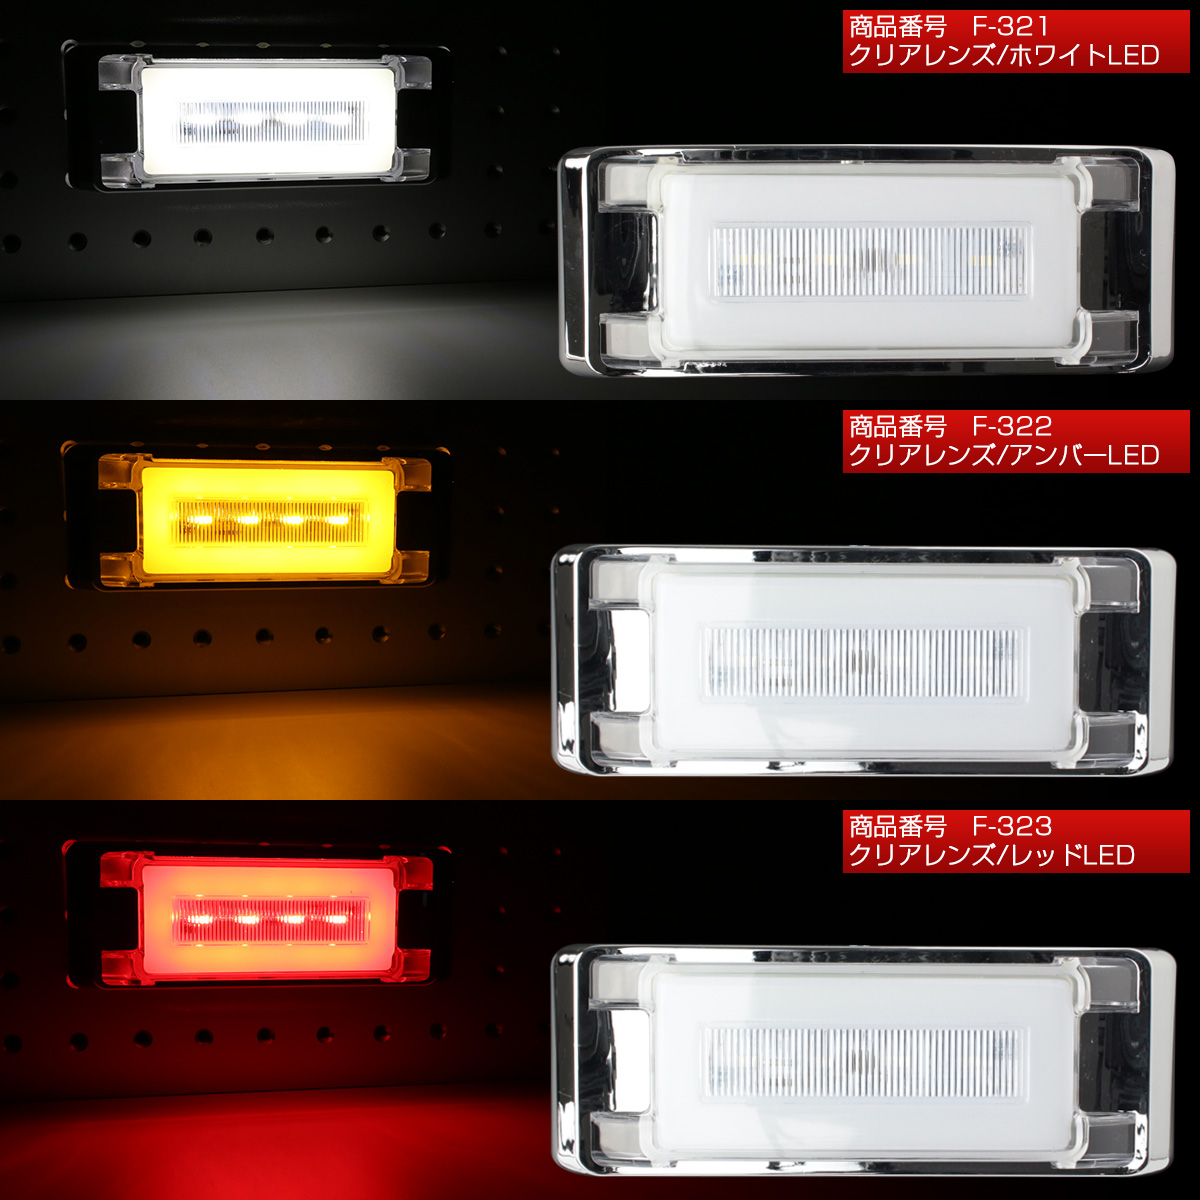 ファイバープレート内蔵 LED フラット マーカーランプ 面発光 サイドマーカー メッキ